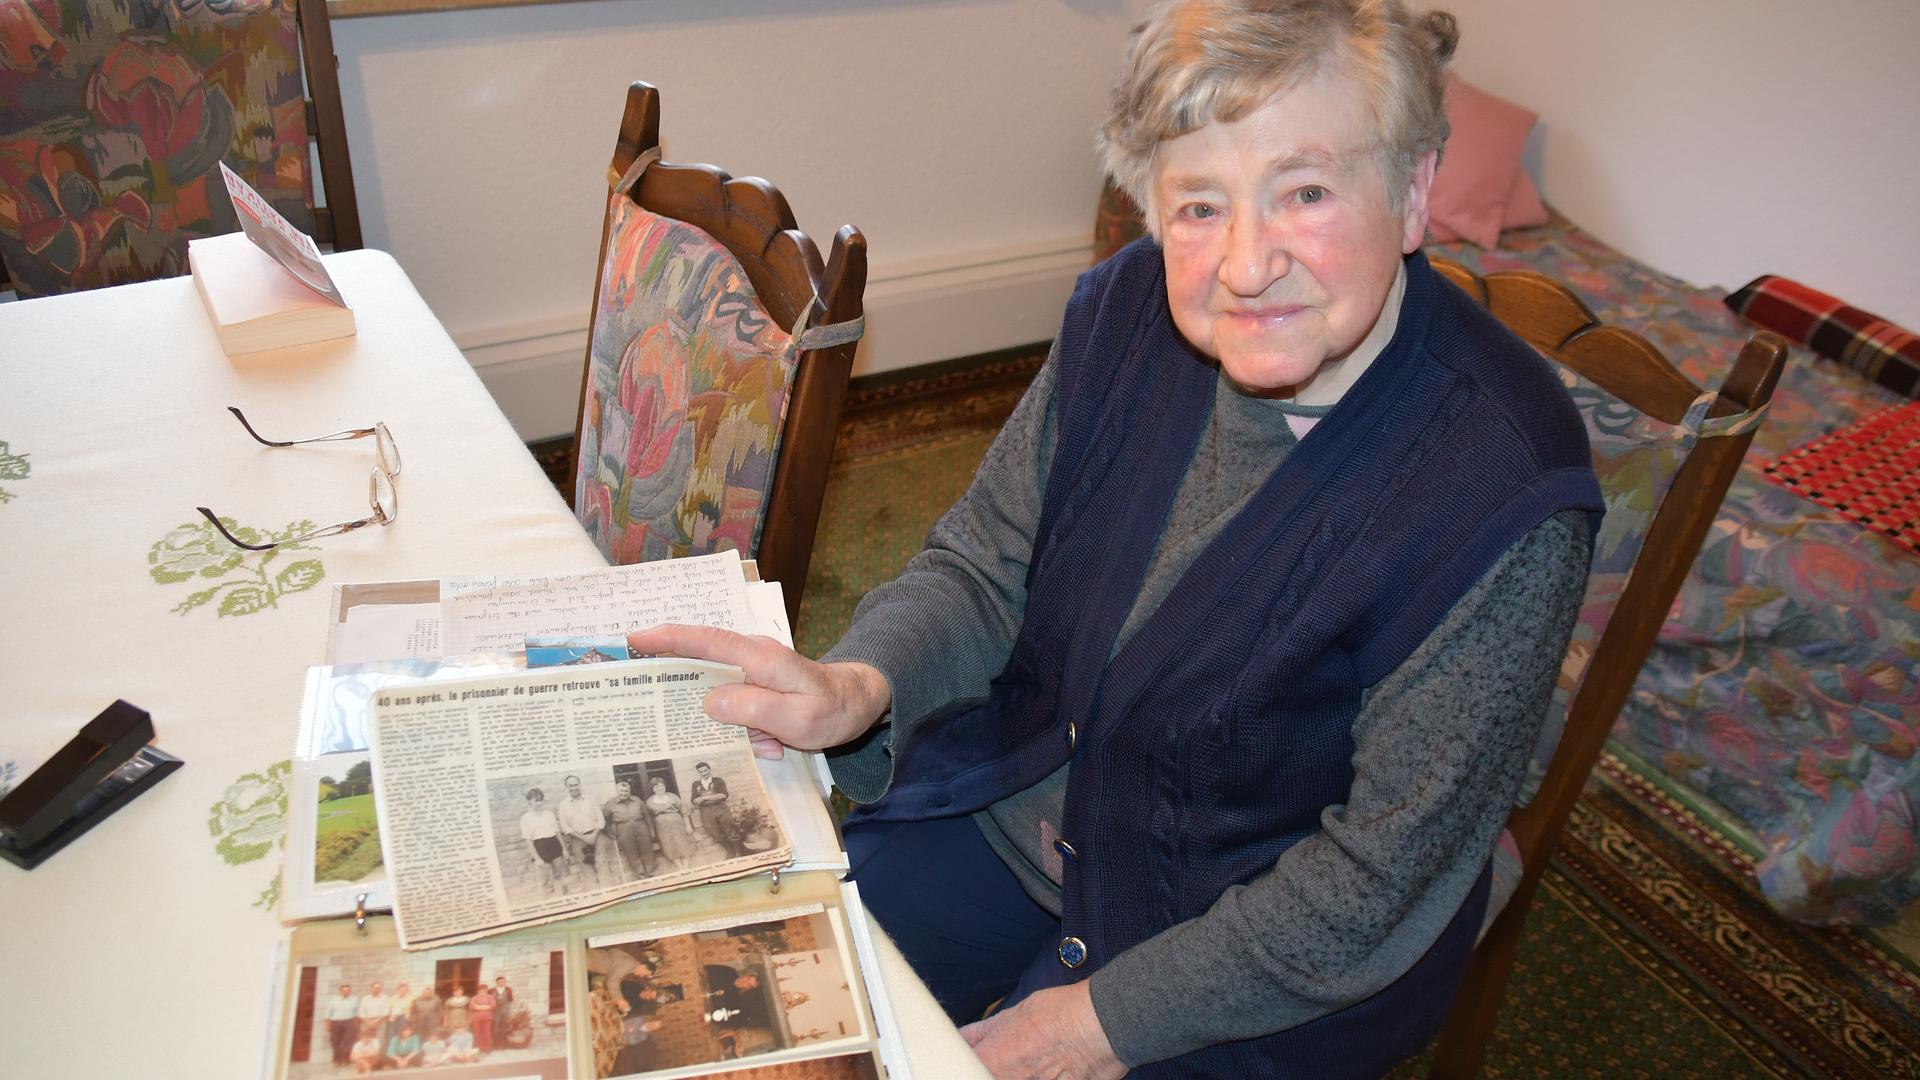 Tiefe Verbundenheit: Die 88-jährige Anne Frank hält den französischen Zeitungsartikel in der Hand, in dem die Freundschaft zwischen ihrem Ehemann Walter und dem ehemaligen Kriegsgefangenen Leon Leconte beschrieben wird. 